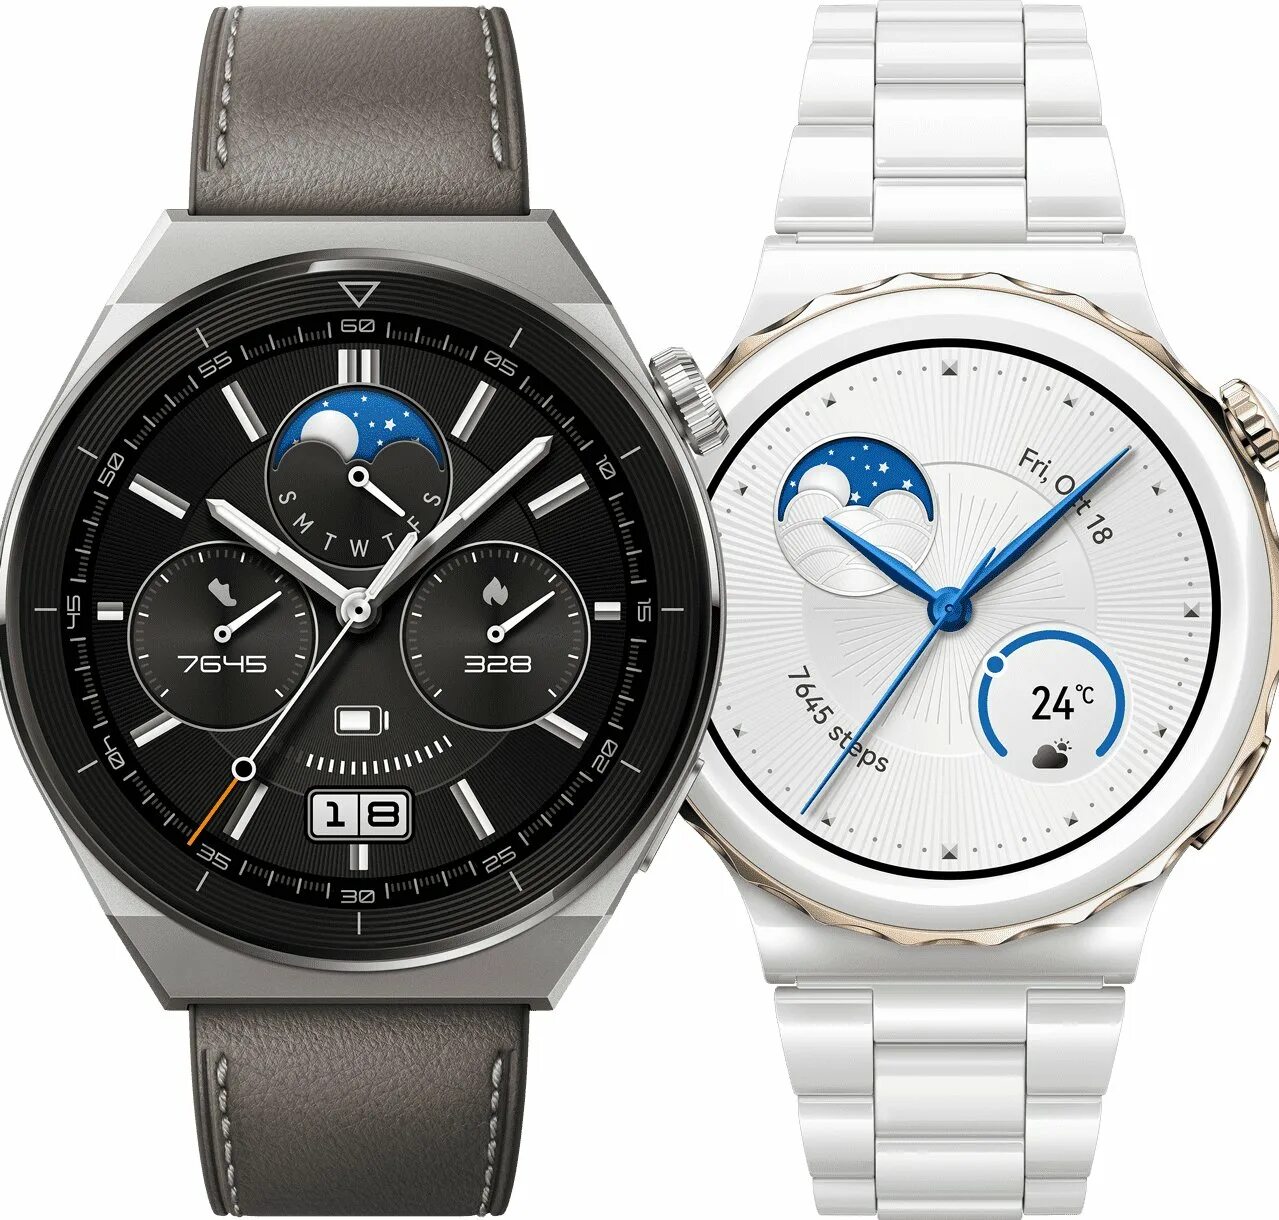 Huawei watch 2022. Huawei watch gt 3. Часы Huawei gt3. Часы Huawei watch gt 3 Pro. Huawei watch gt 3 pro обзор